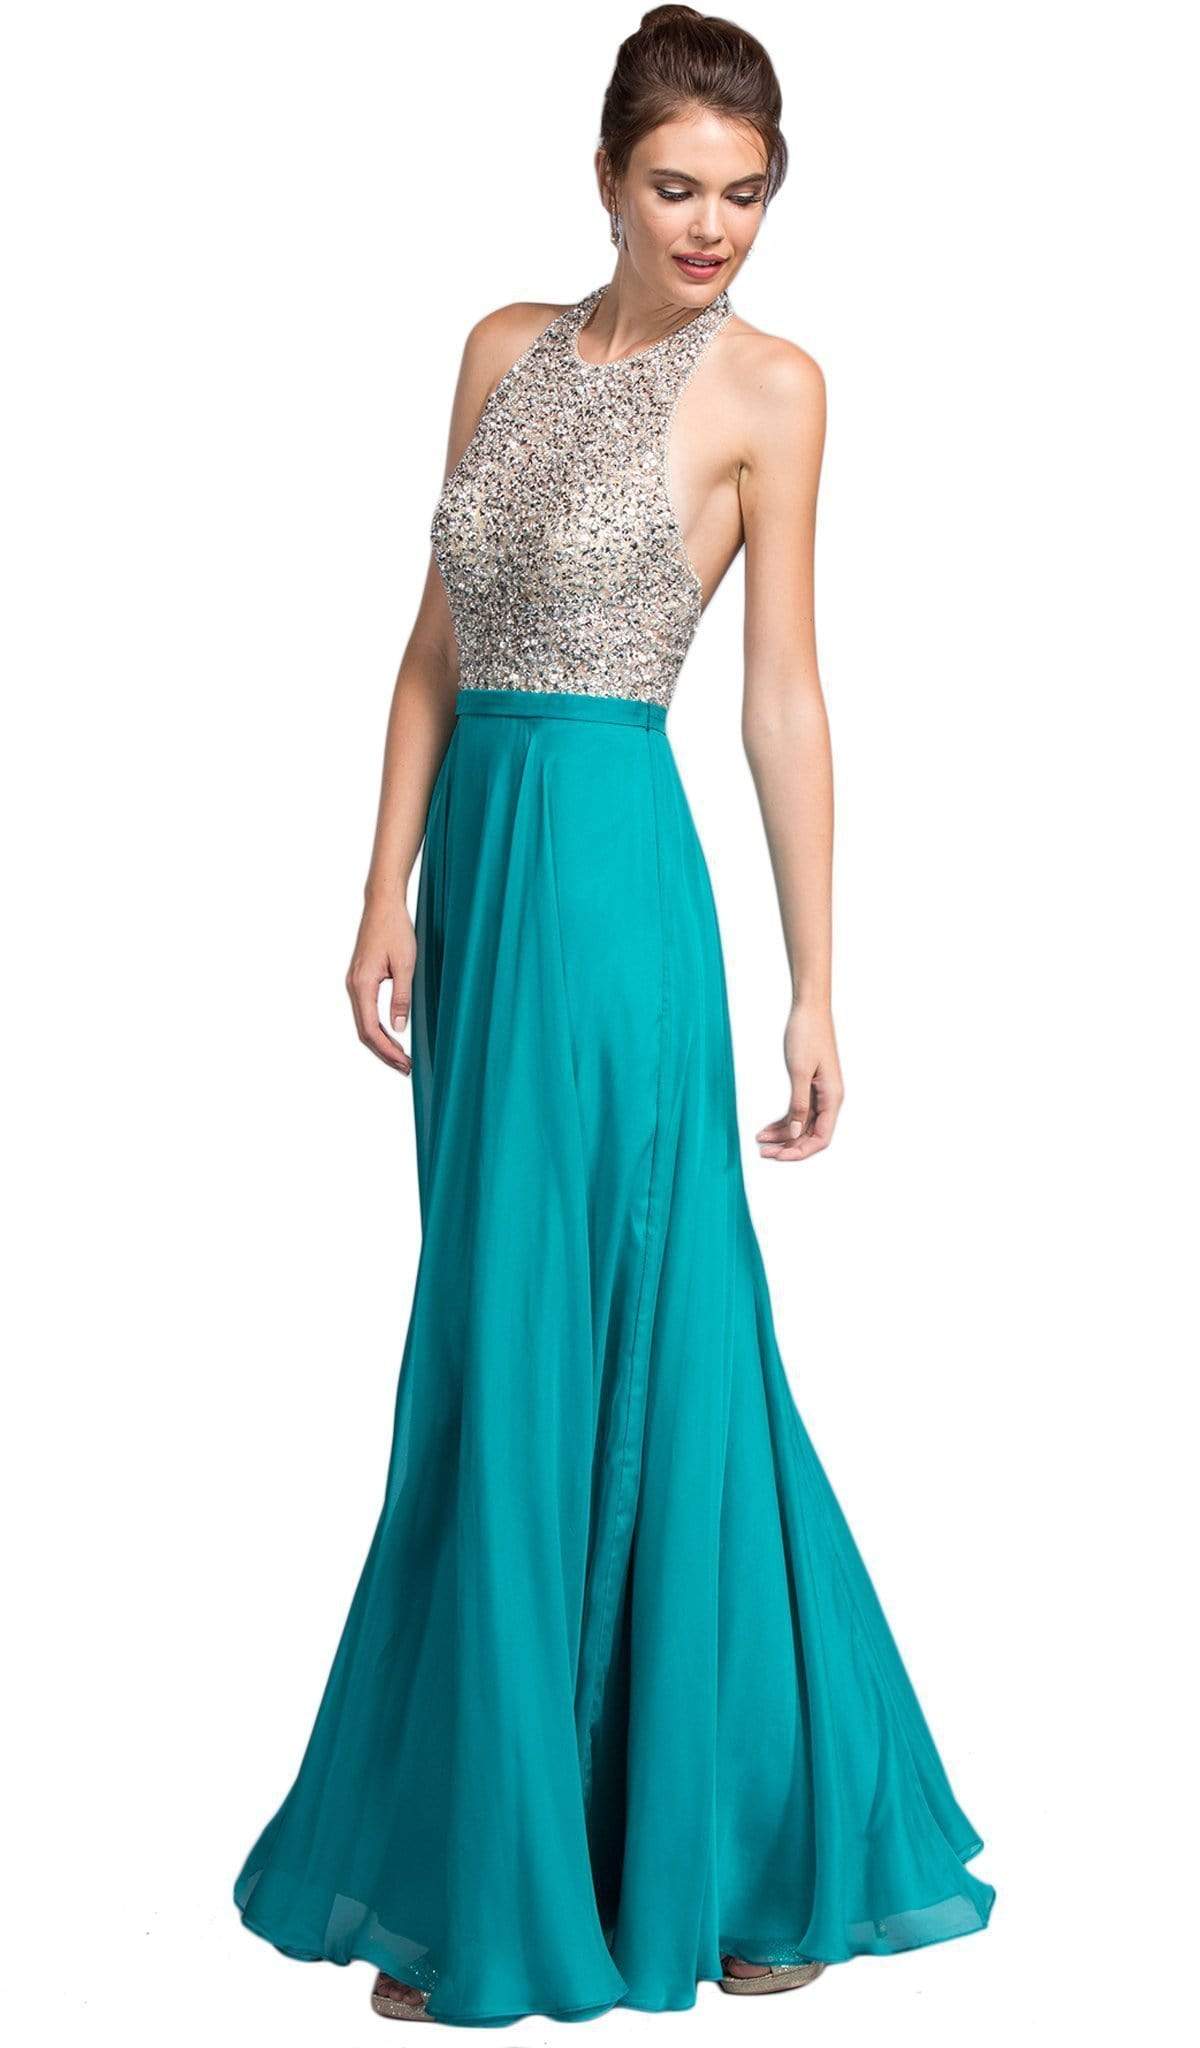 Aspeed Design - Embellished Halter Neckline A-line Prom Dress
